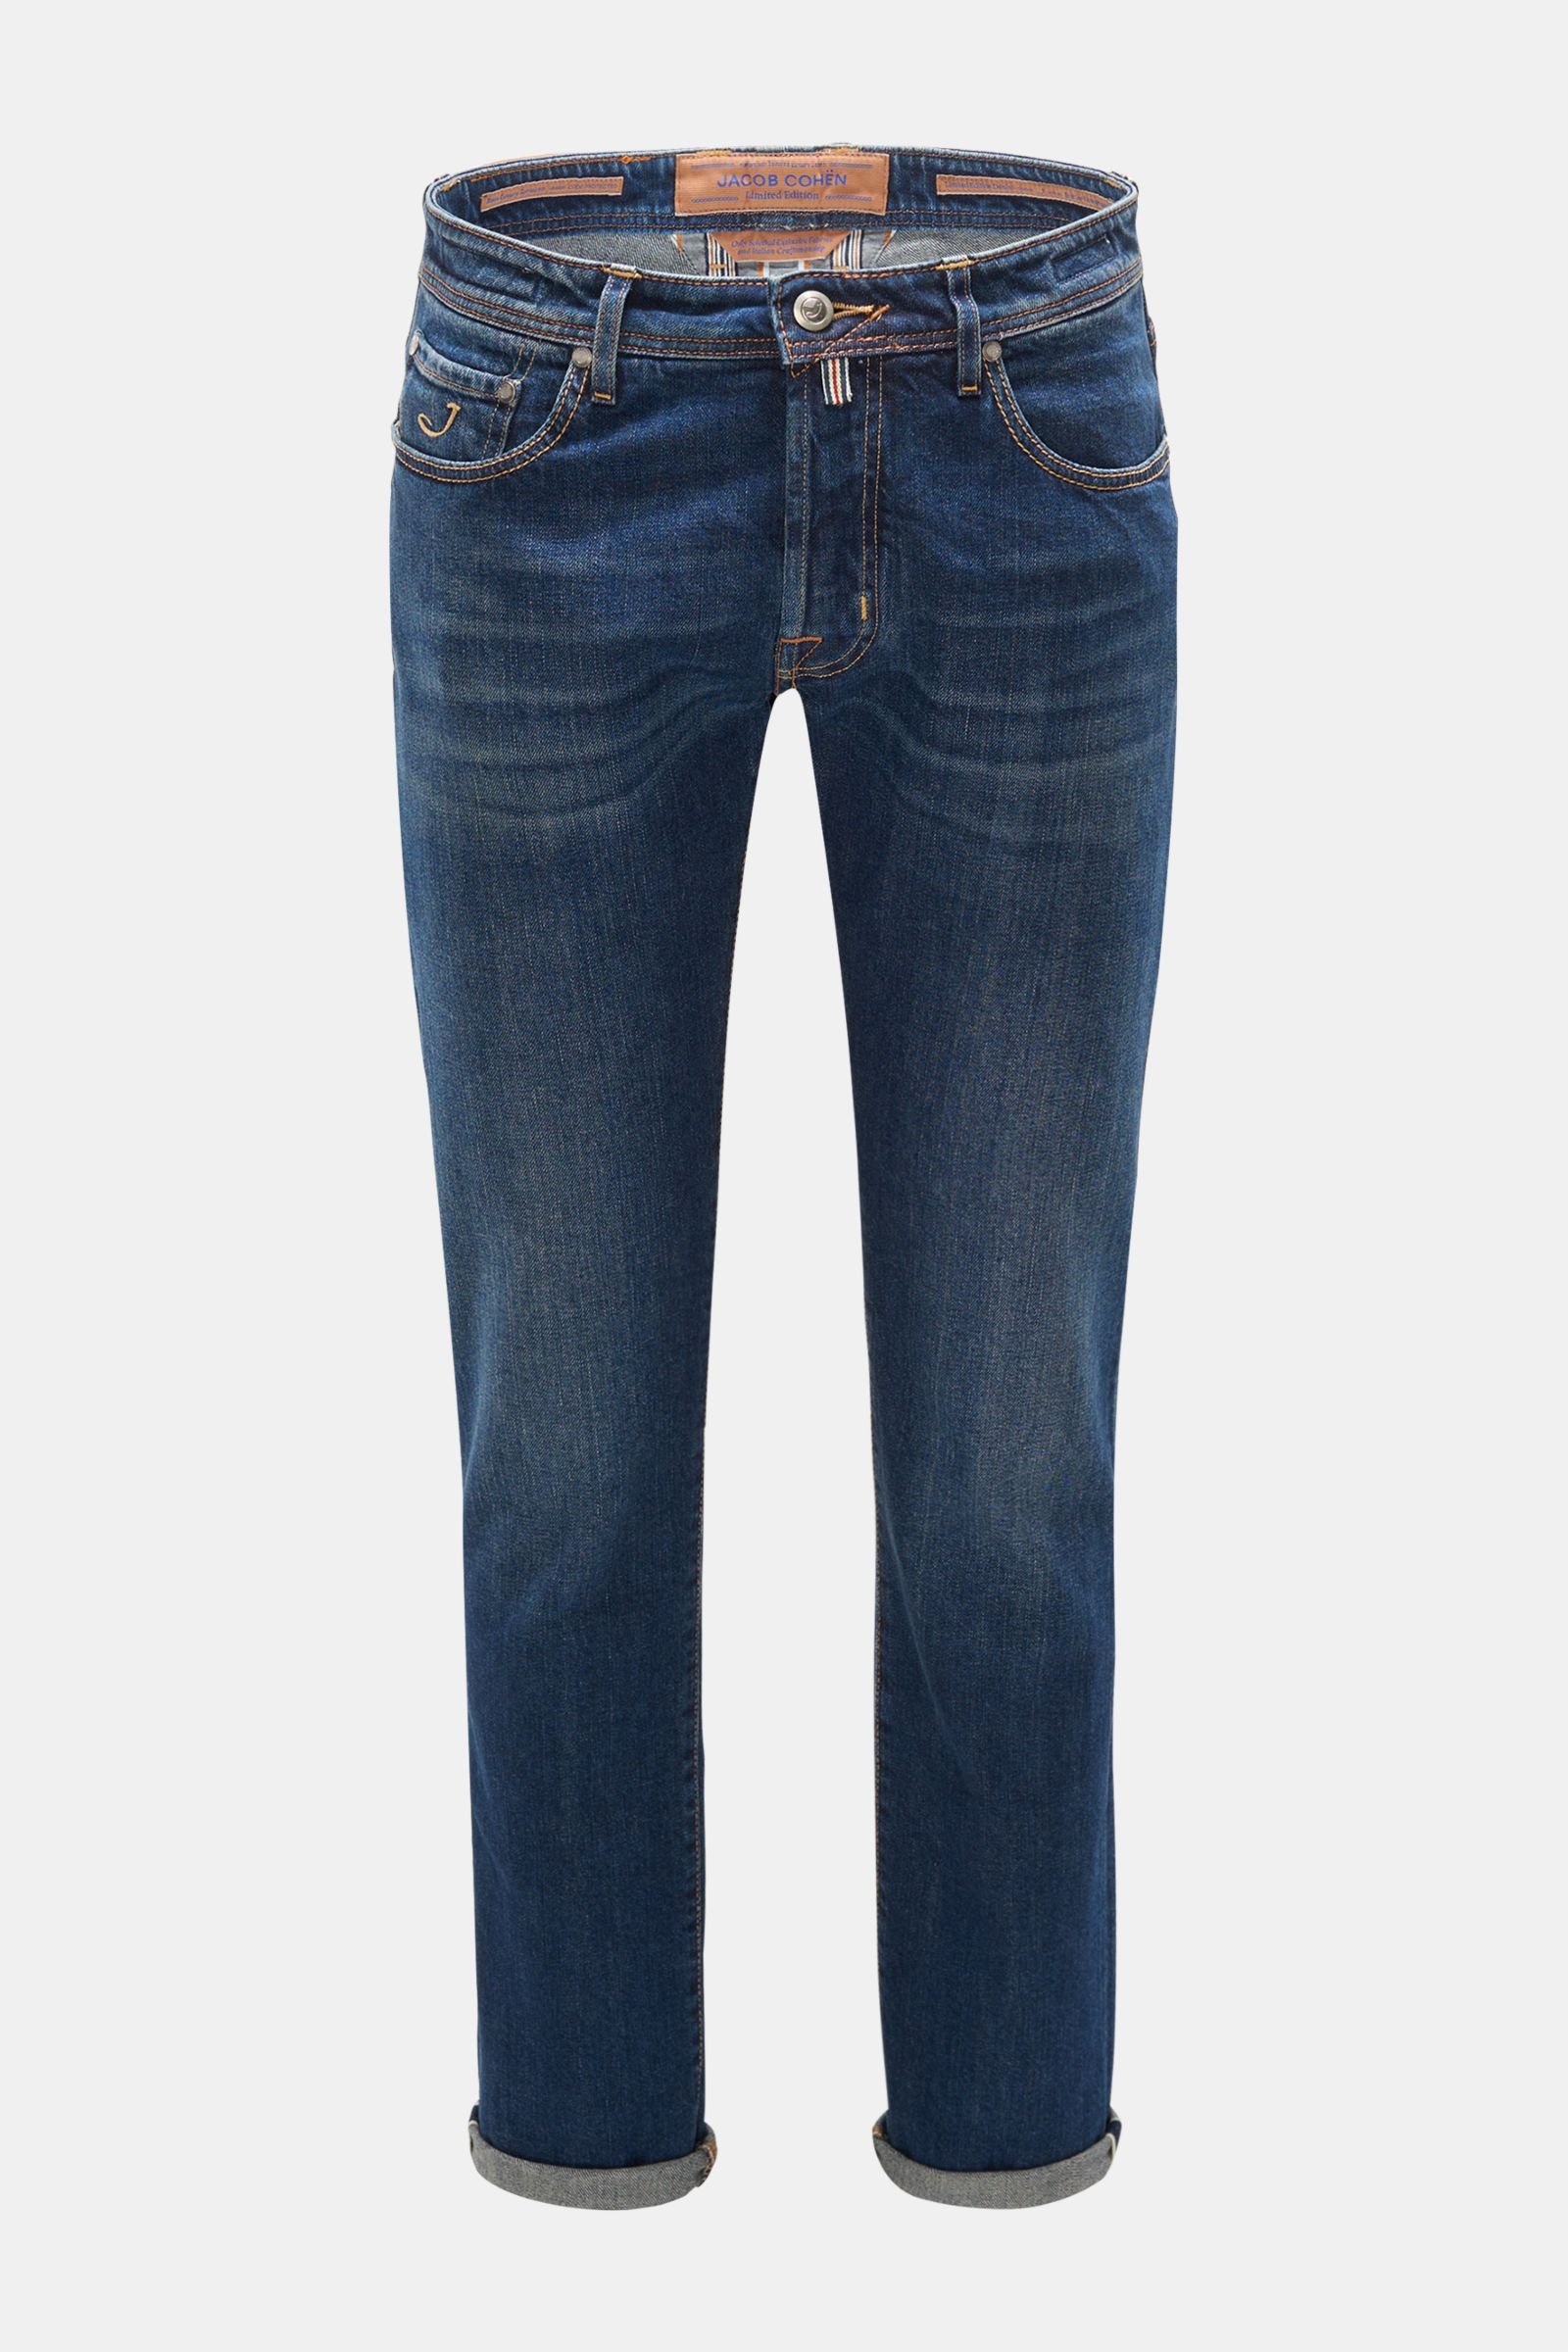 Jeans 'J688 Limited Comfort Slim Fit' navy